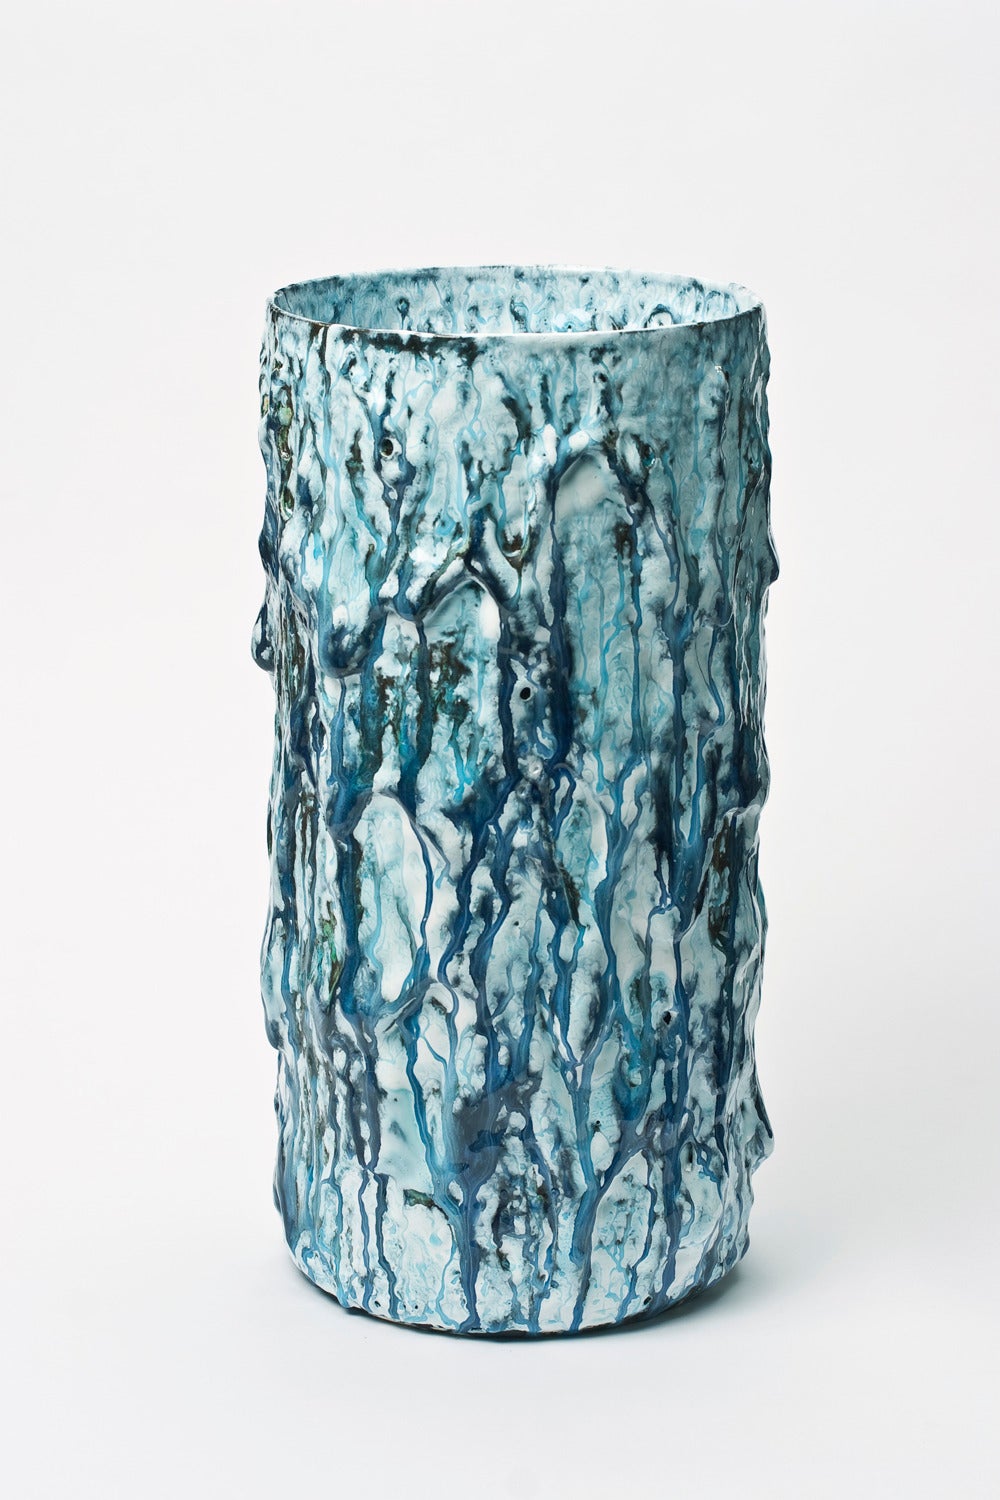 Blue Cylinder Vase By Morten Løbner Espersen 